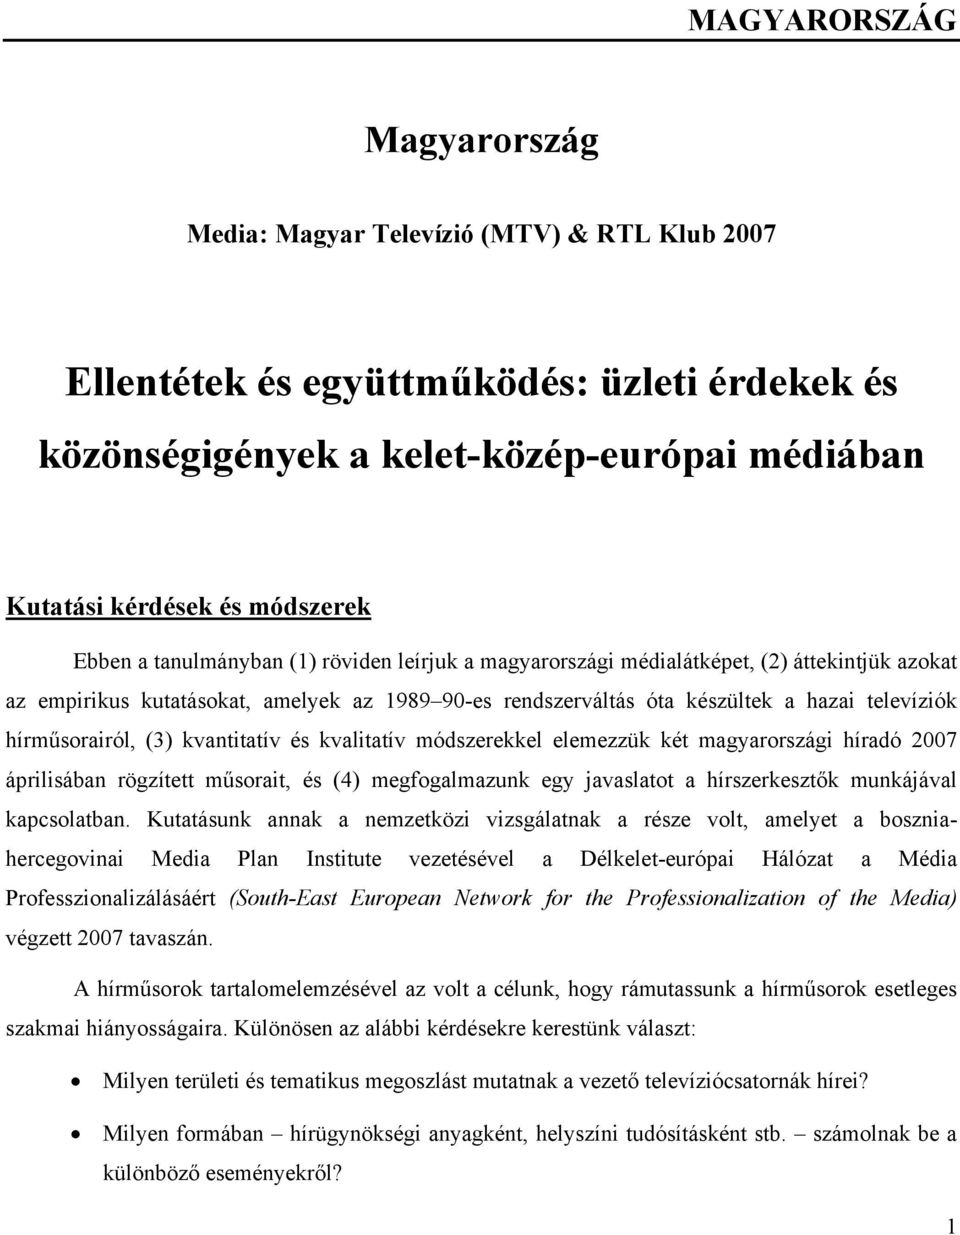 (3) kvantitatív és kvalitatív módszerekkel elemezzük két magyarországi híradó 2007 áprilisában rögzített műsorait, és (4) megfogalmazunk egy javaslatot a hírszerkesztők munkájával kapcsolatban.